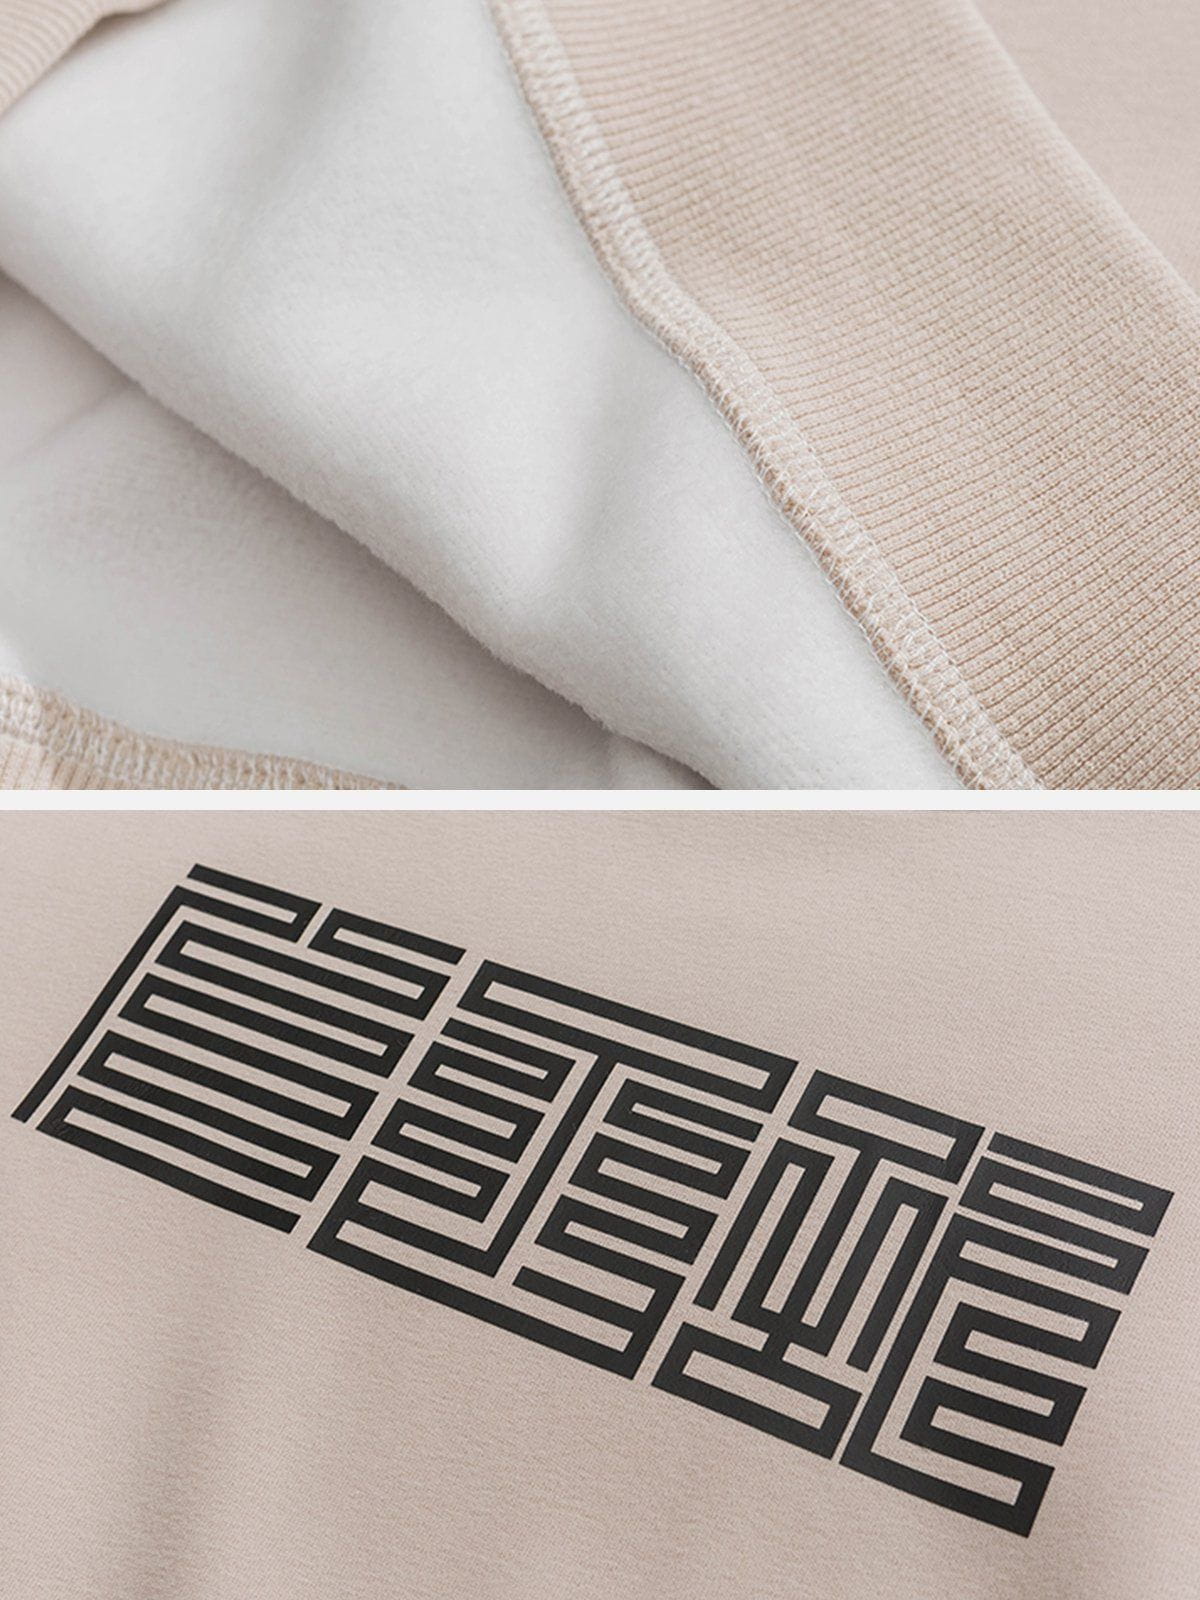 Eprezzy® - Stamp Graphic Sweatshirt Streetwear Fashion - eprezzy.com